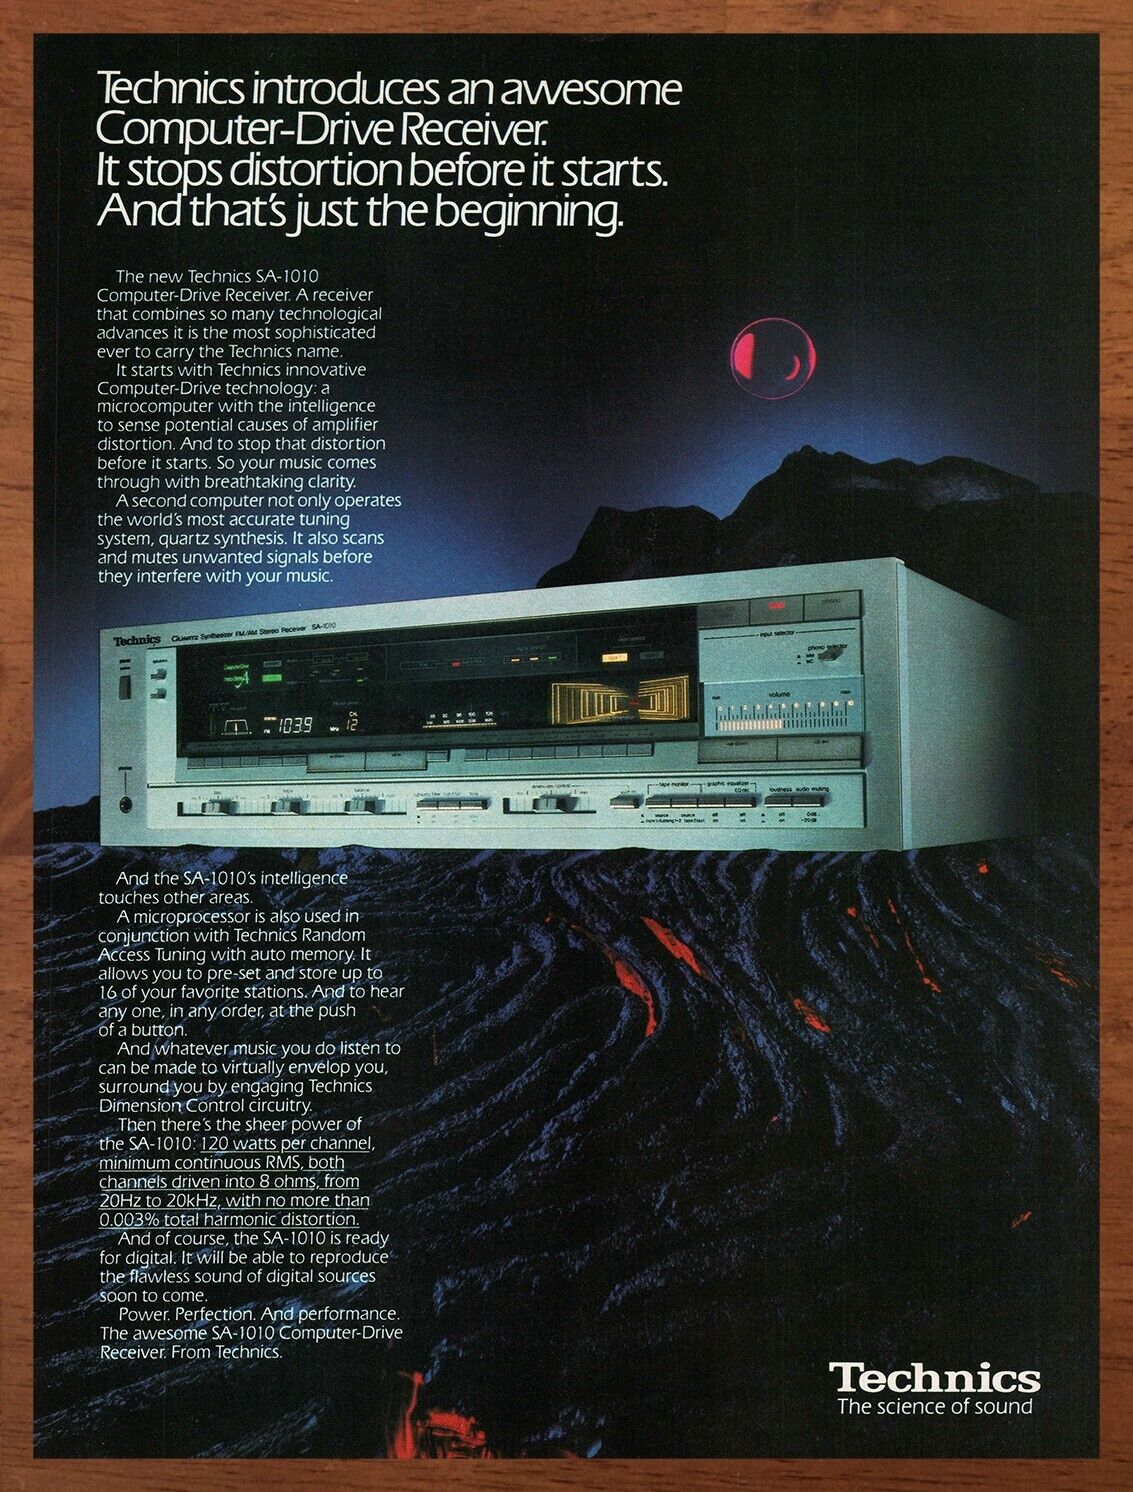 1984 Technics Computer Drive Receiver Print Ad/Poster 80s Retro Wall Bar Art